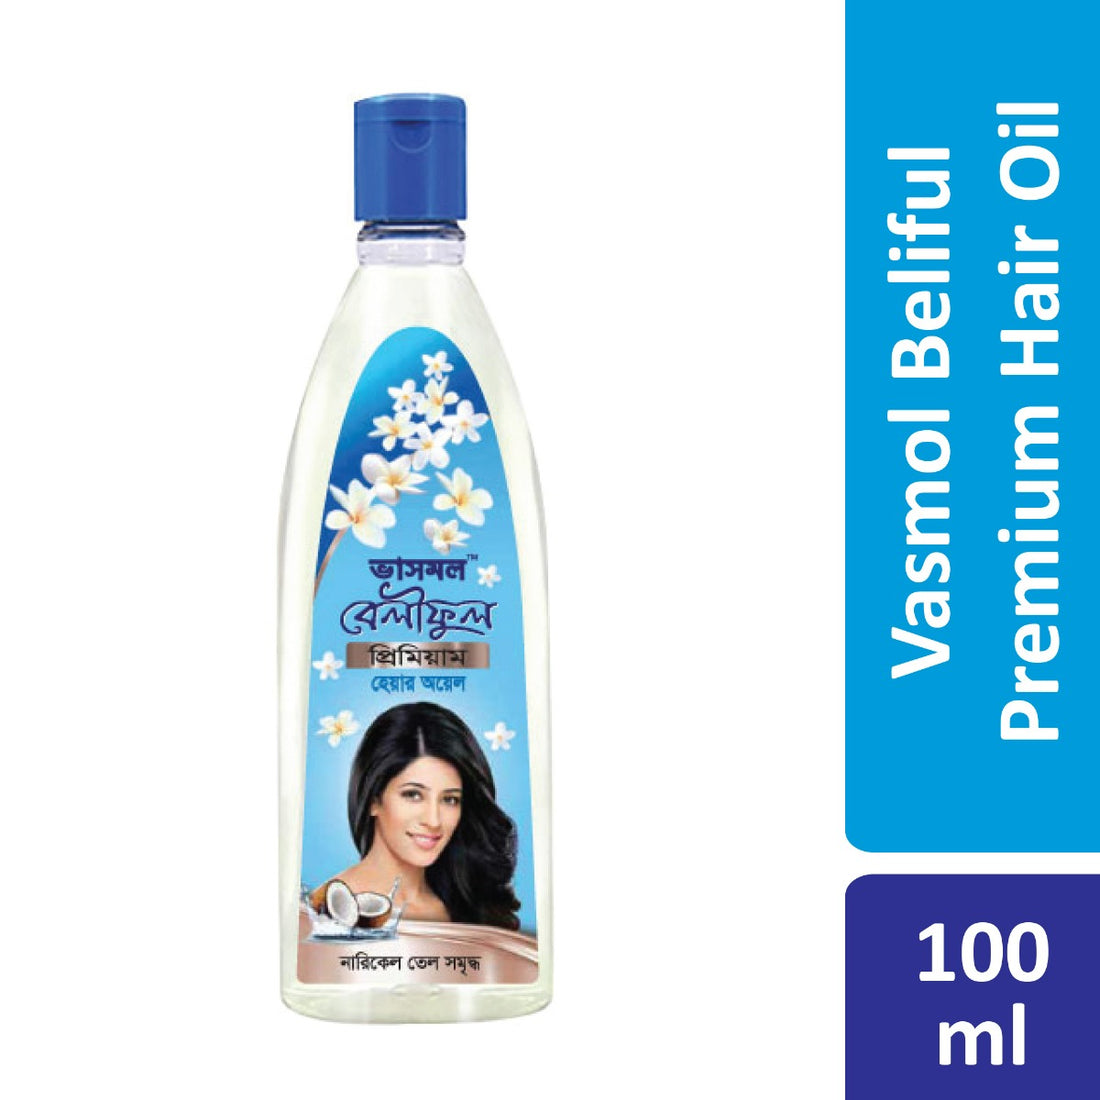 Vasmol Beliphul Premium Hair Oil